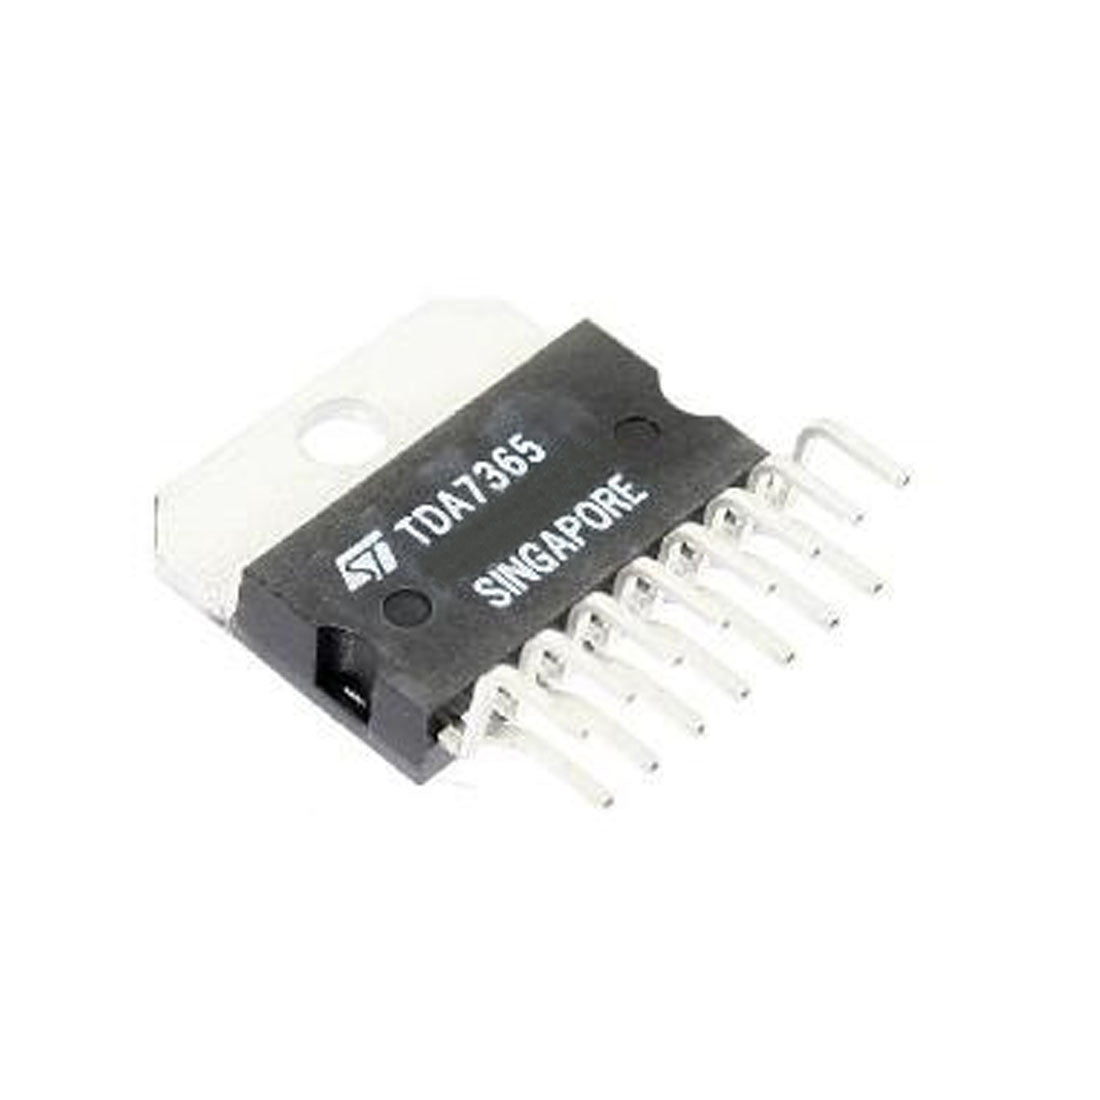 ST TDA7365 Componente elettronico, circuito integrato, transistor, 15 contatti